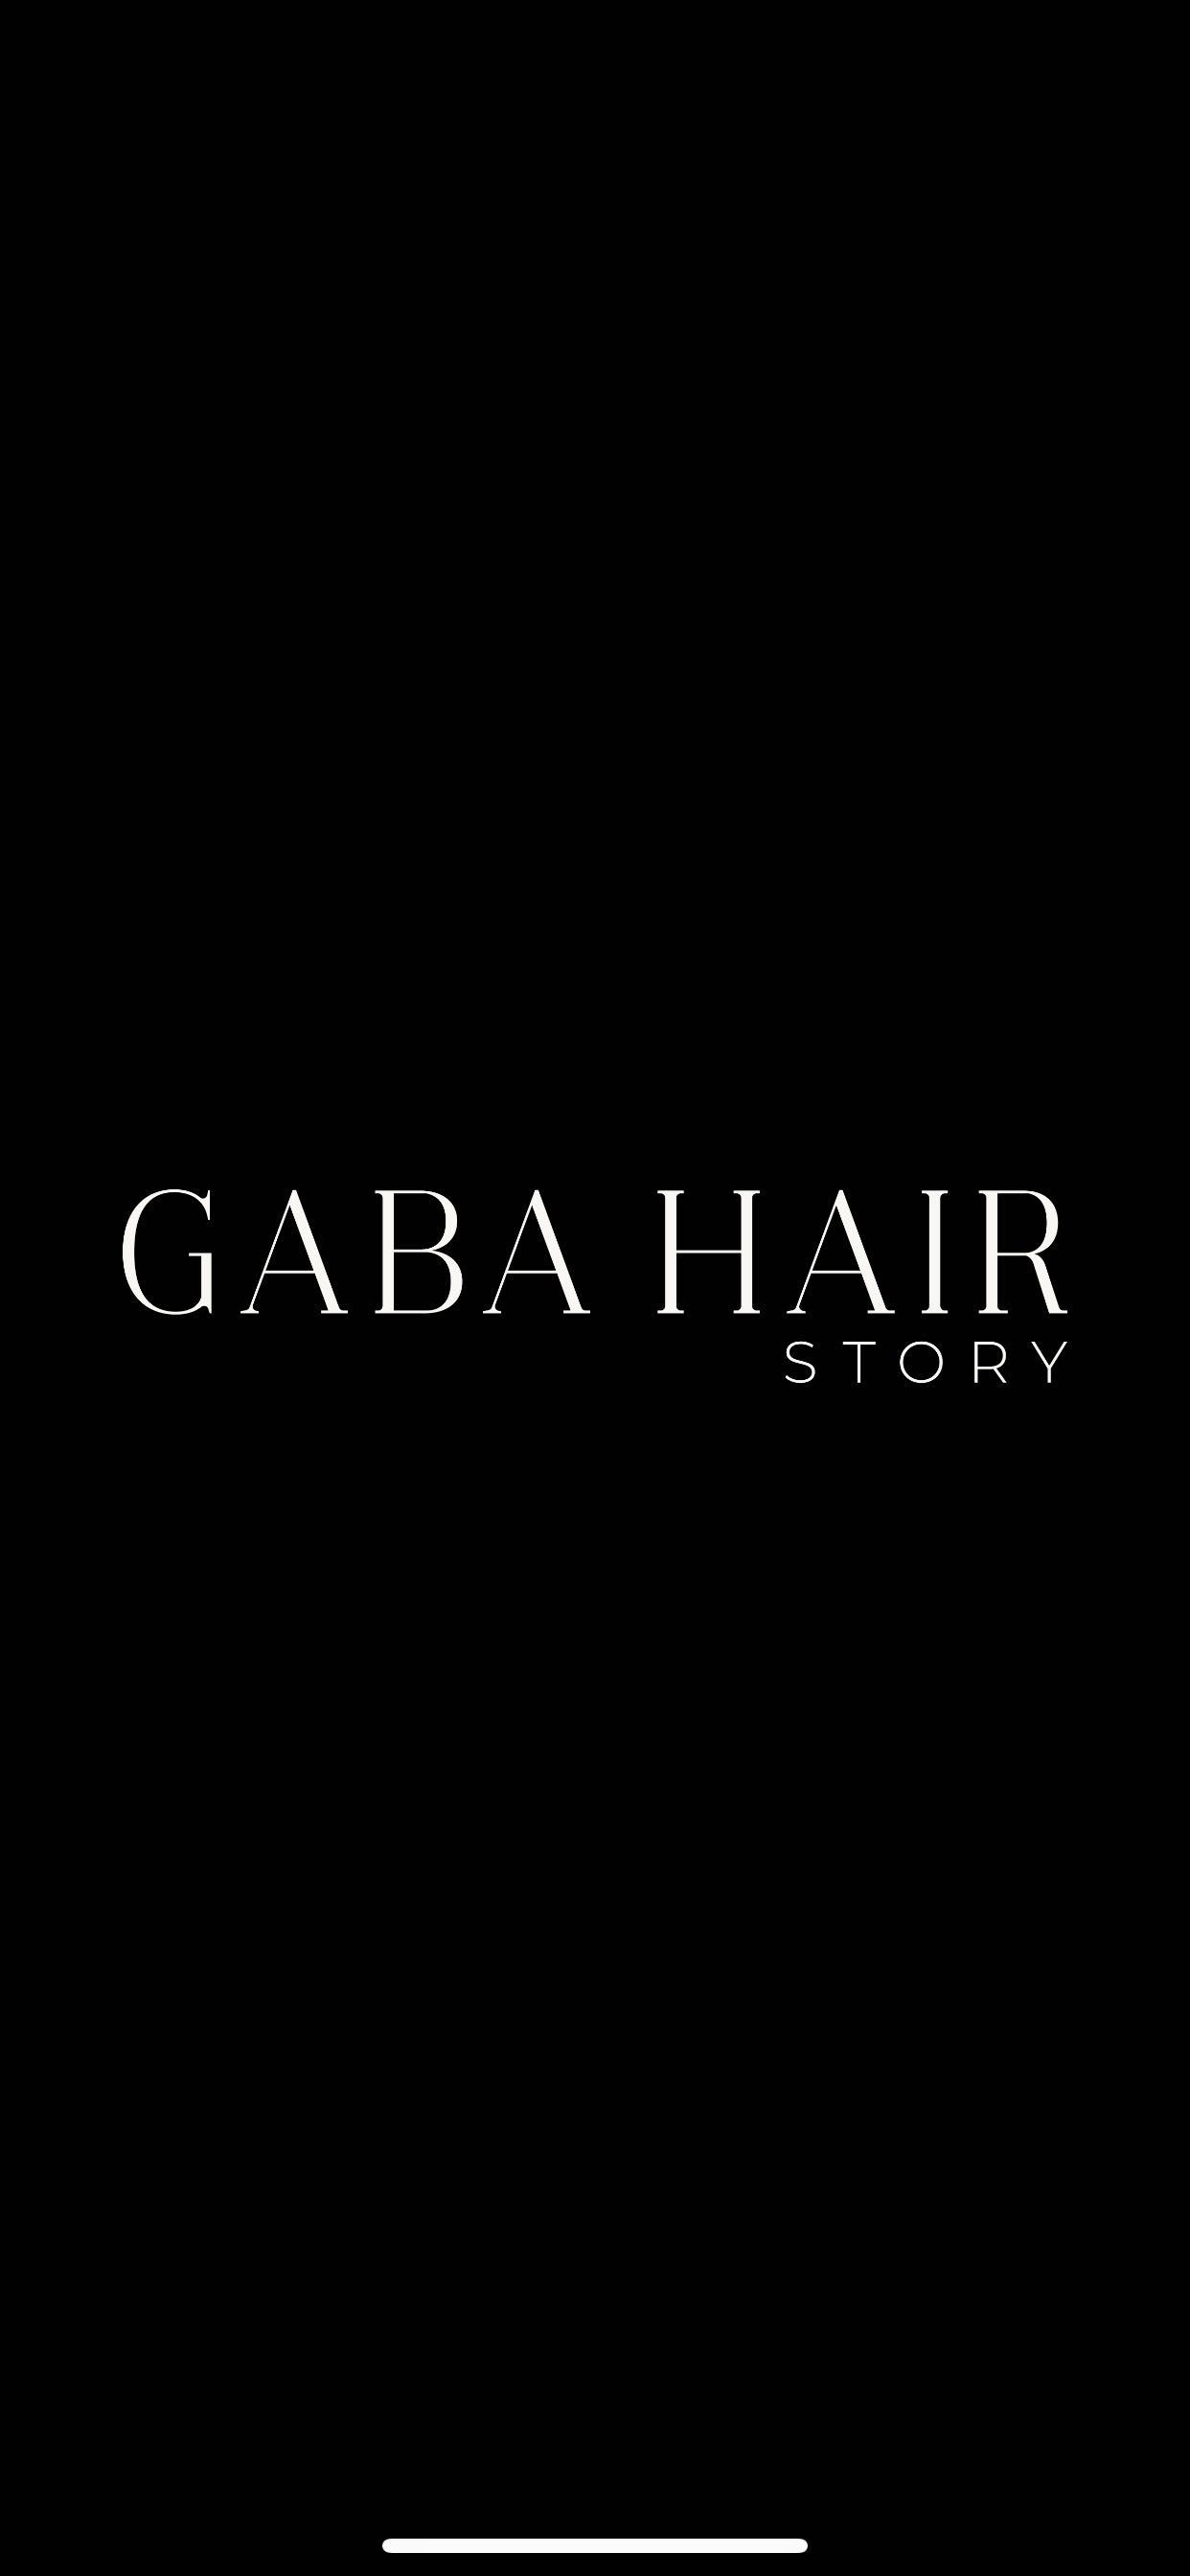 Gaba Hair Story Nowogrodzka, Nowogrodzka 18A/8A, 00-511, Warszawa, Śródmieście